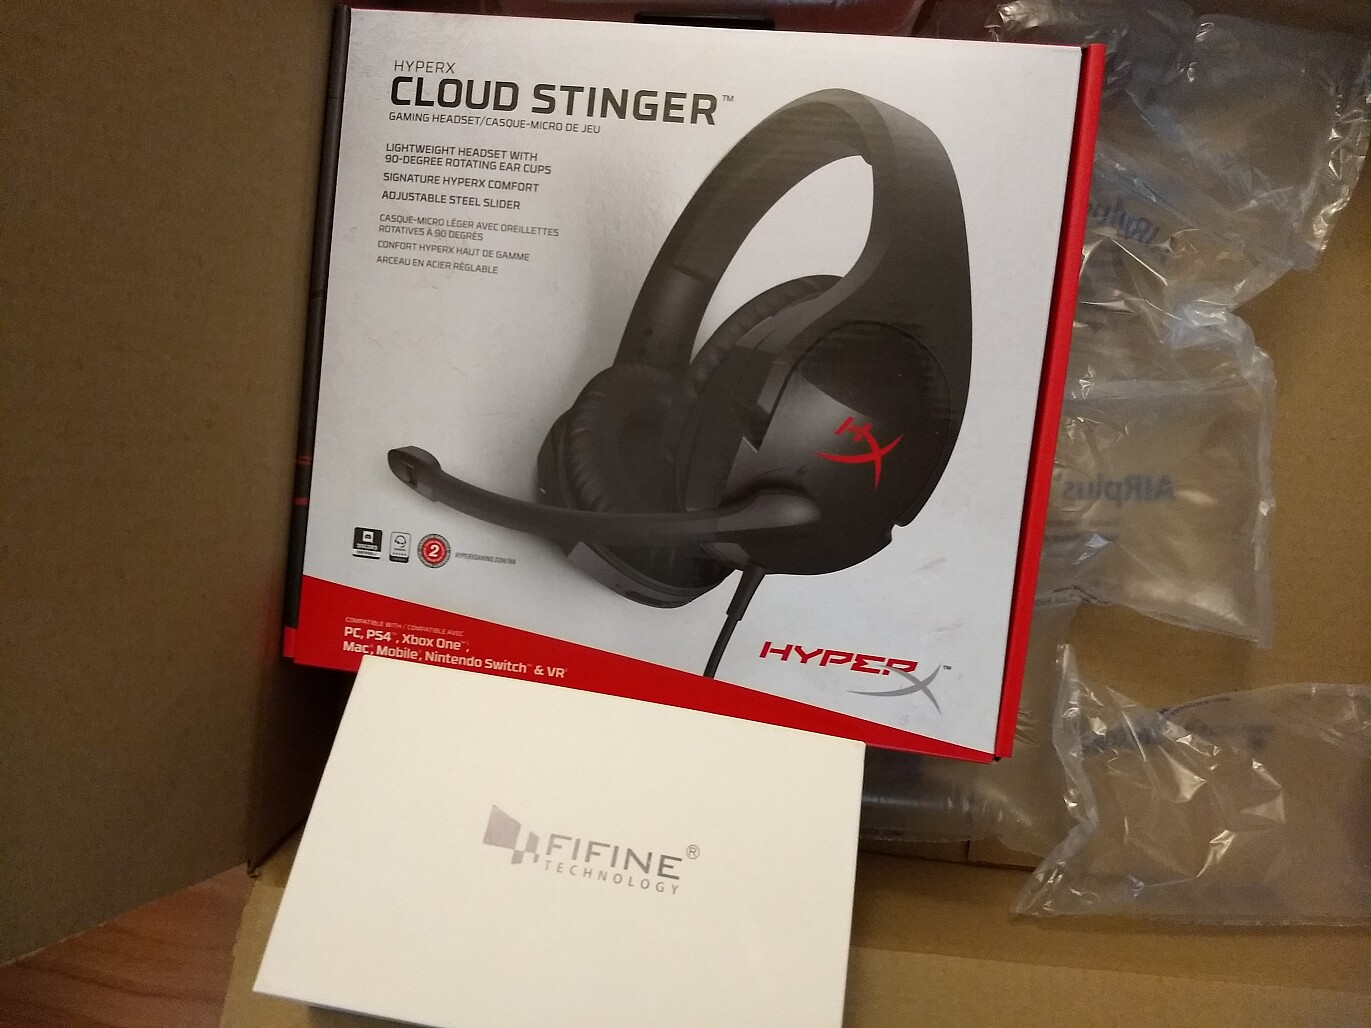 HyperX Cloud Stinger headset box 202104 vcM2C-s1200